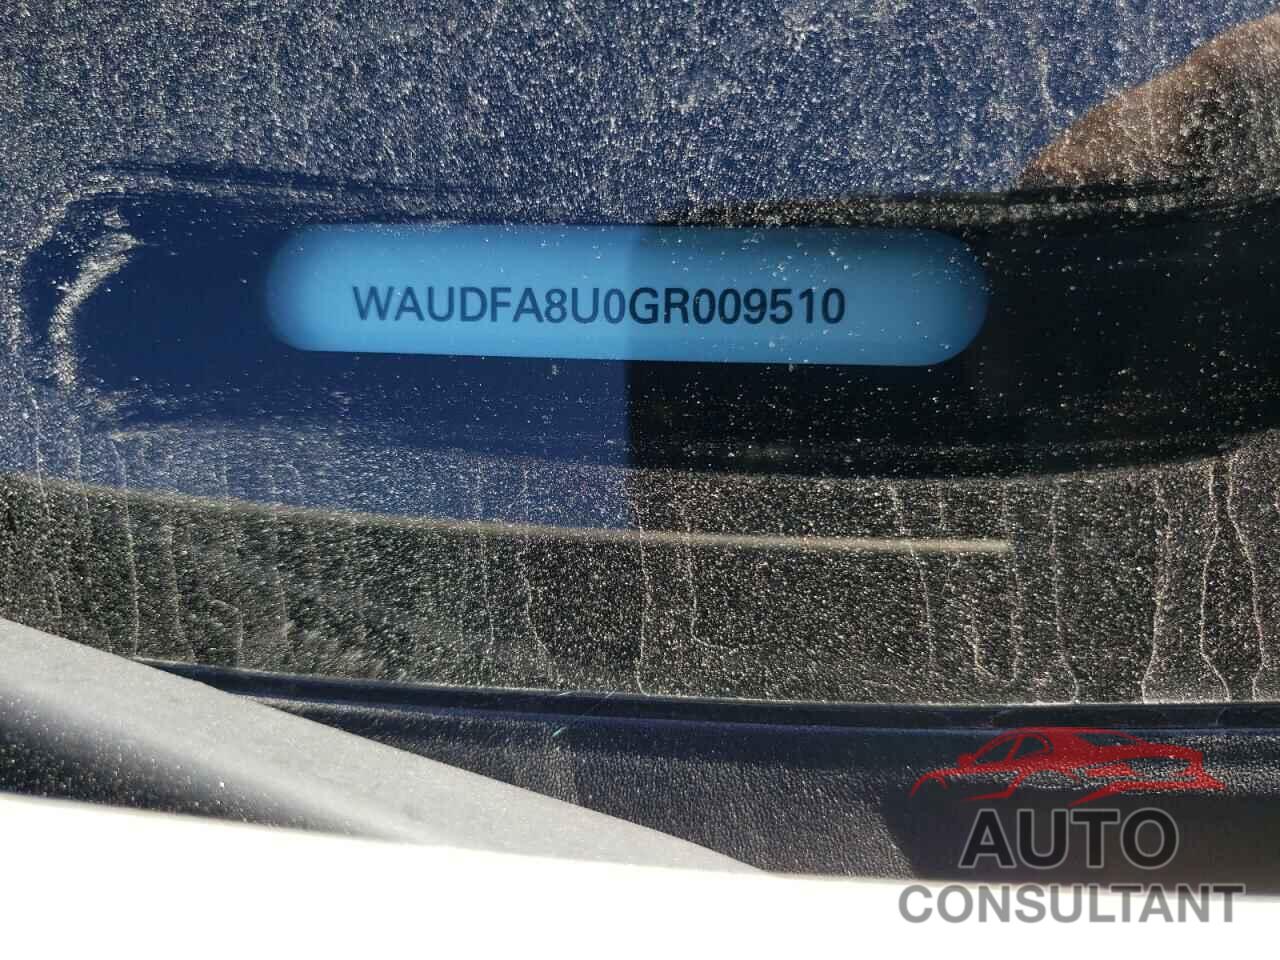 AUDI Q3 2016 - WAUDFA8U0GR009510